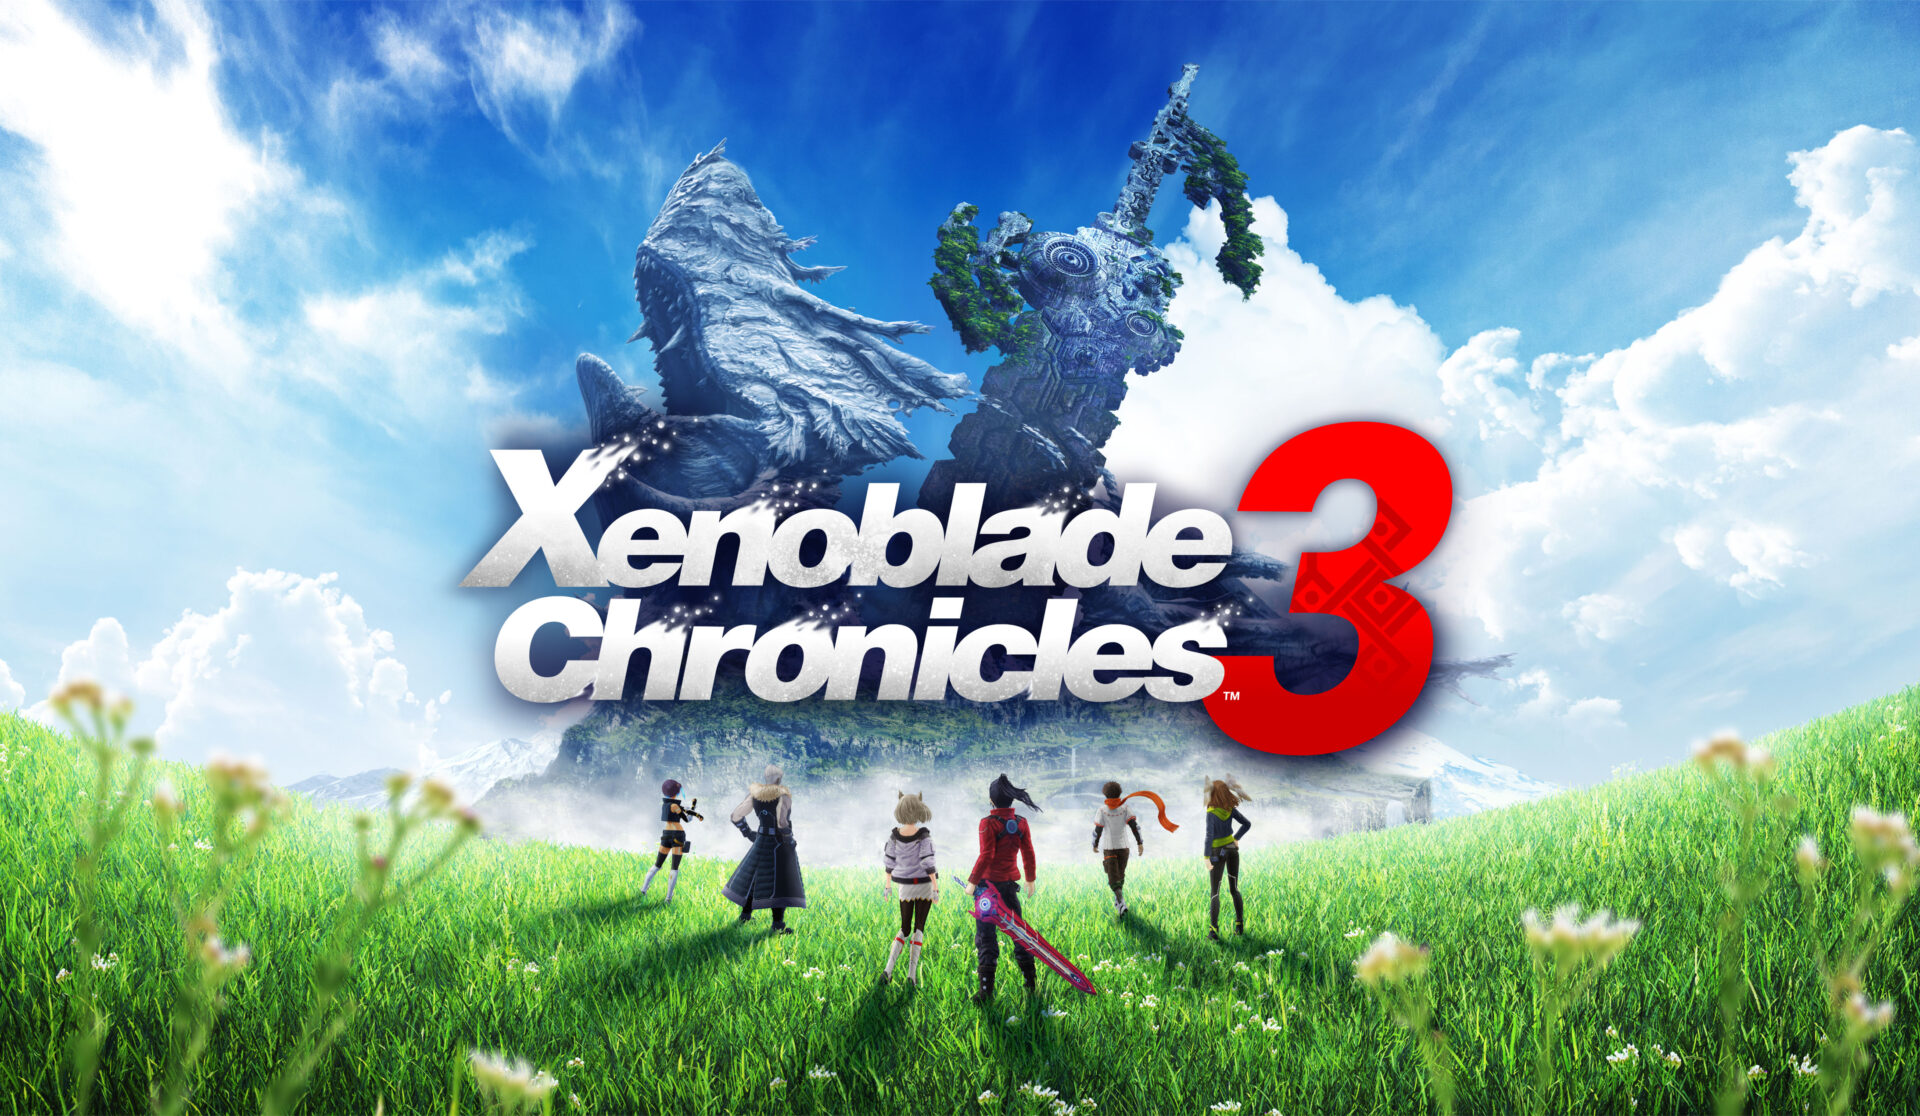 Data premiery Xenoblade Chronicles 3 została przesunięta!